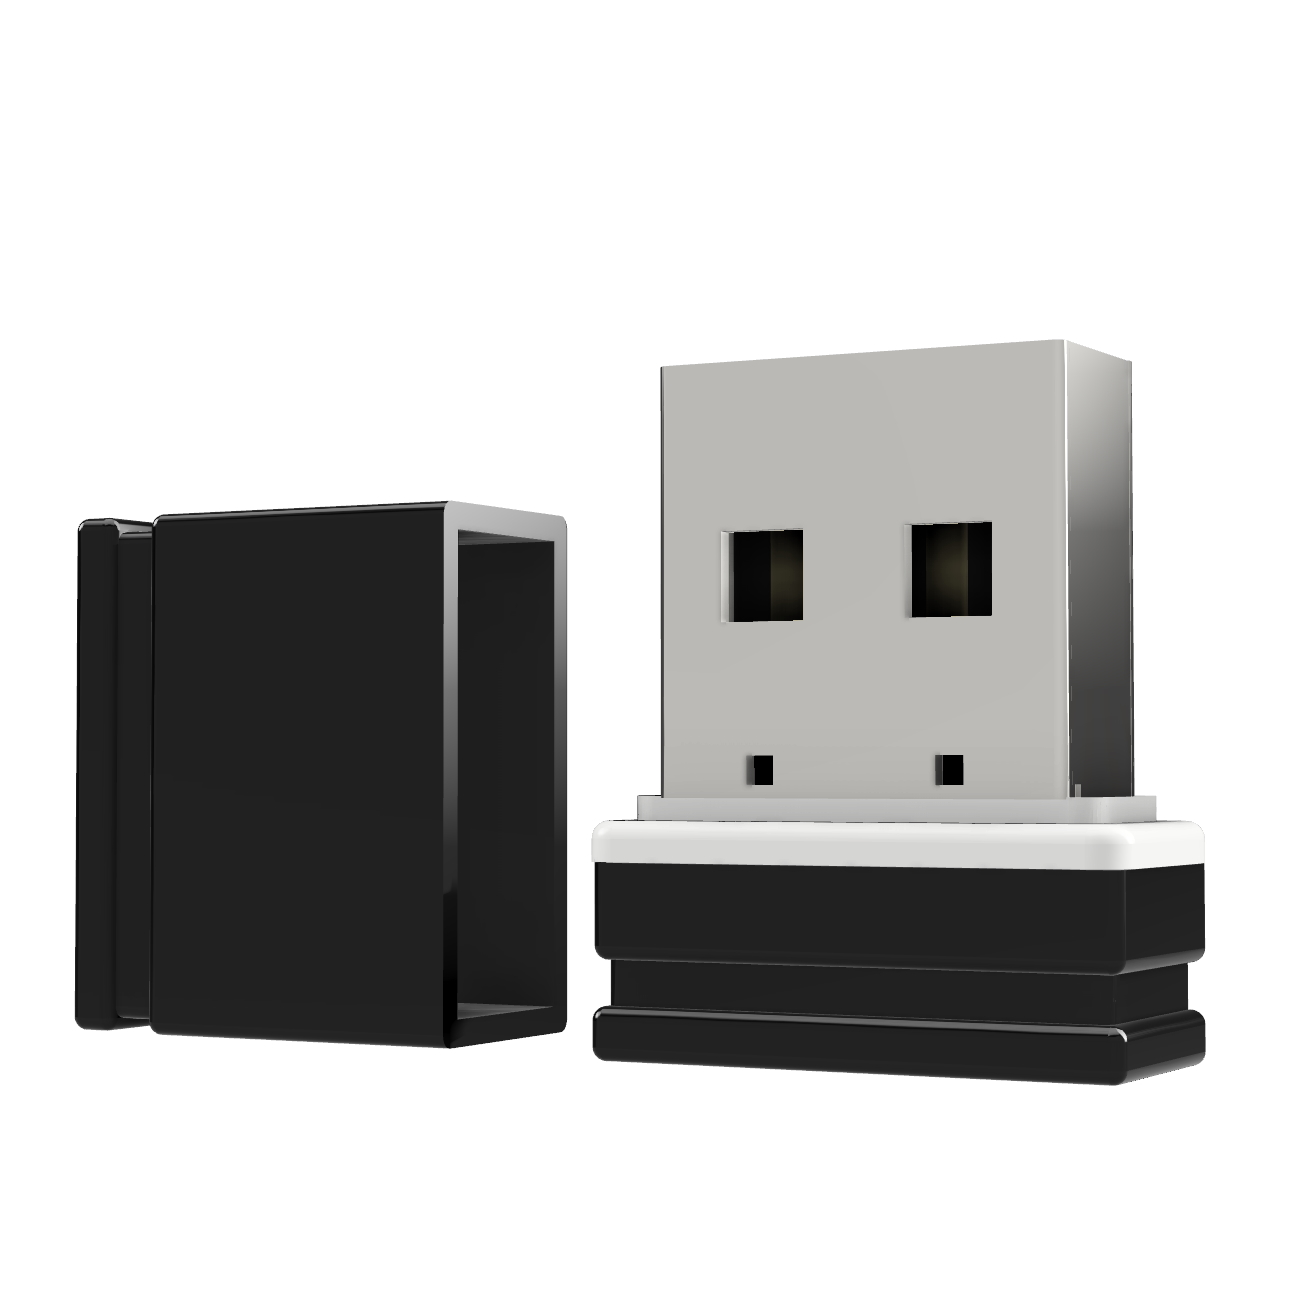 Mini 2 (Schwarz/Weiss, USB-Stick USB GB) ®ULTRA P1 GERMANY